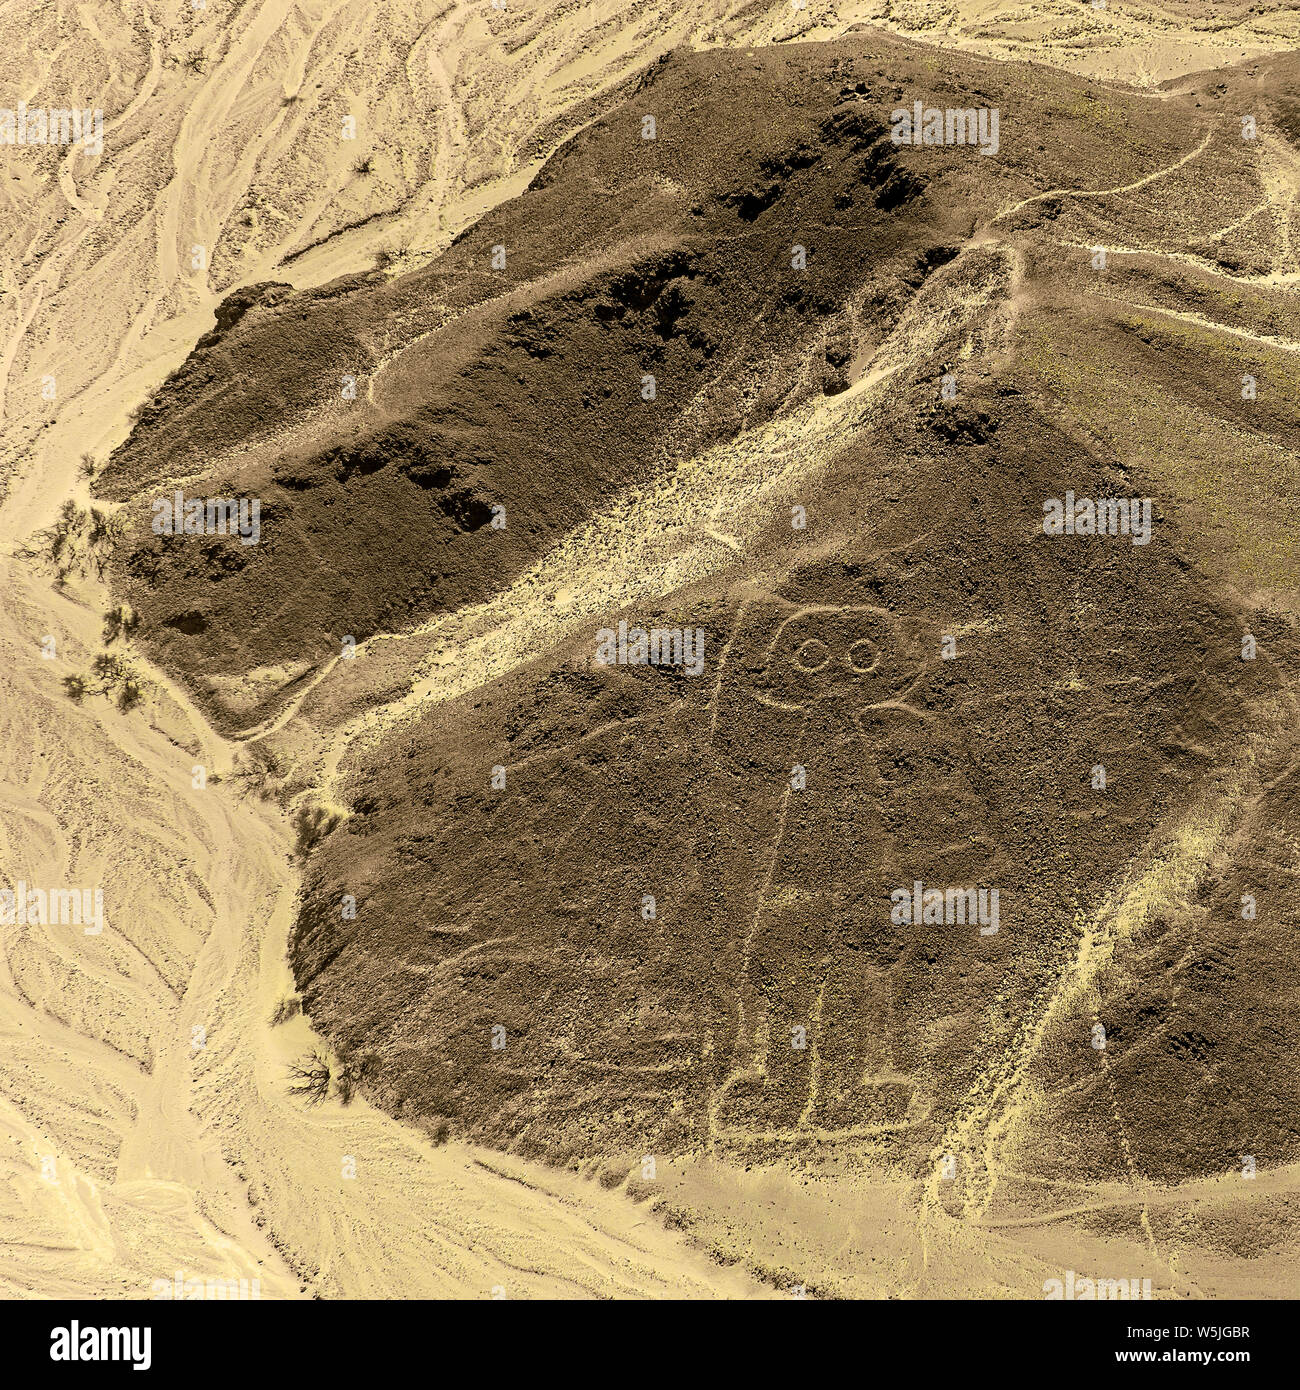 Vista aerea della astronauta geoglyph disegno dalla civiltà Nazca in Perù costiera deserto noto come linee Nazca, Perù. Foto Stock